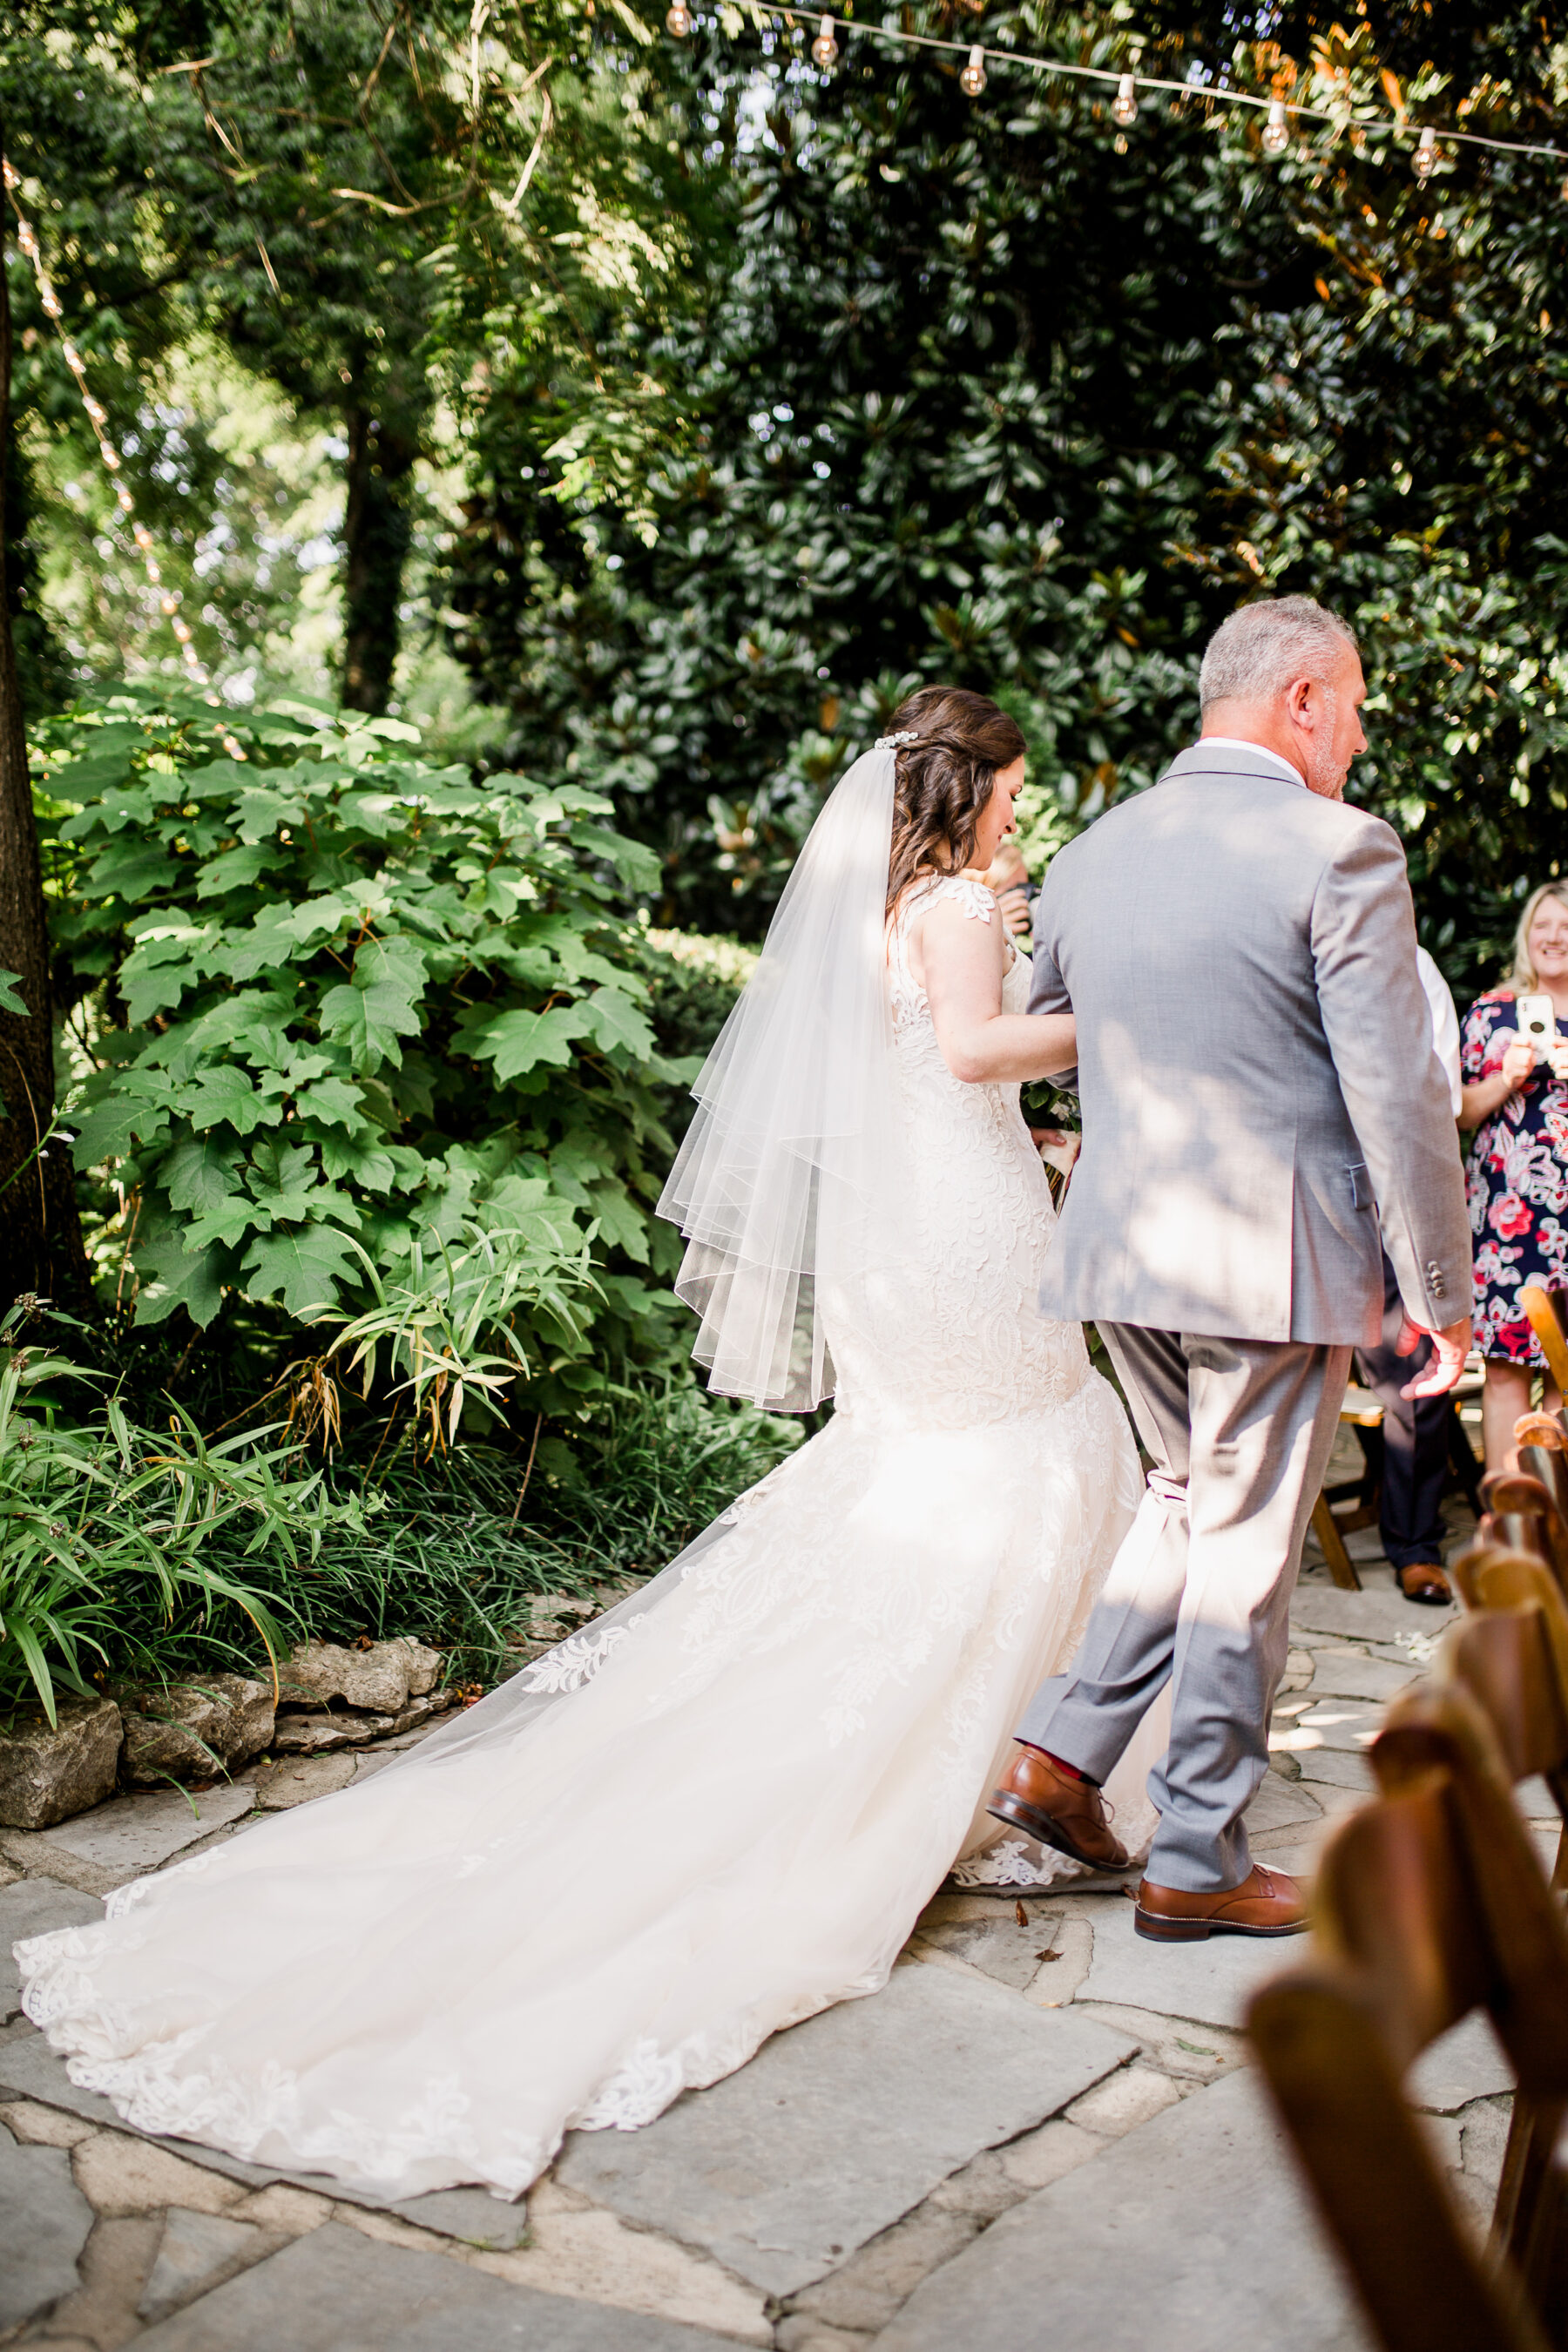 Romantic Garden Wedding at CJ's Off the Square | Nashville Bride Guide